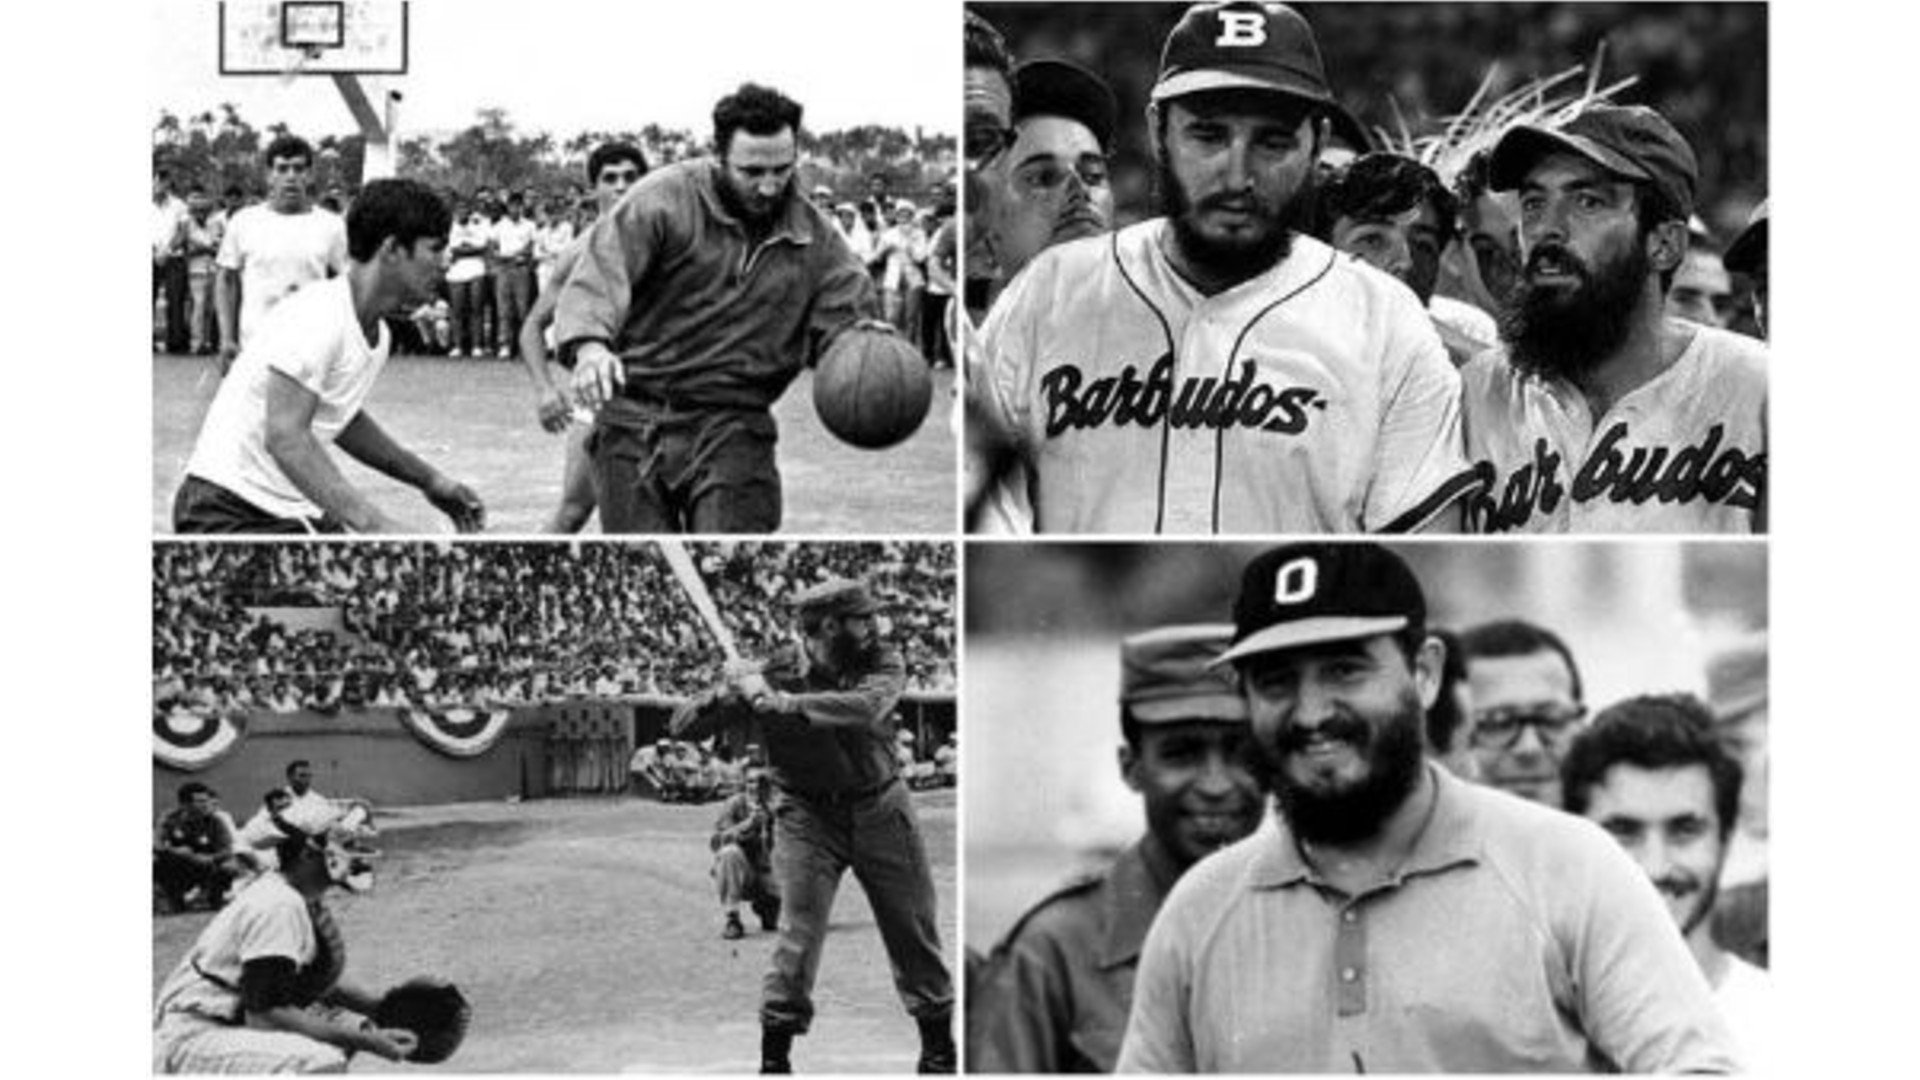 La revolución y el triunfo del deporte en Cuba: La importancia de Fidel en la gestión deportiva